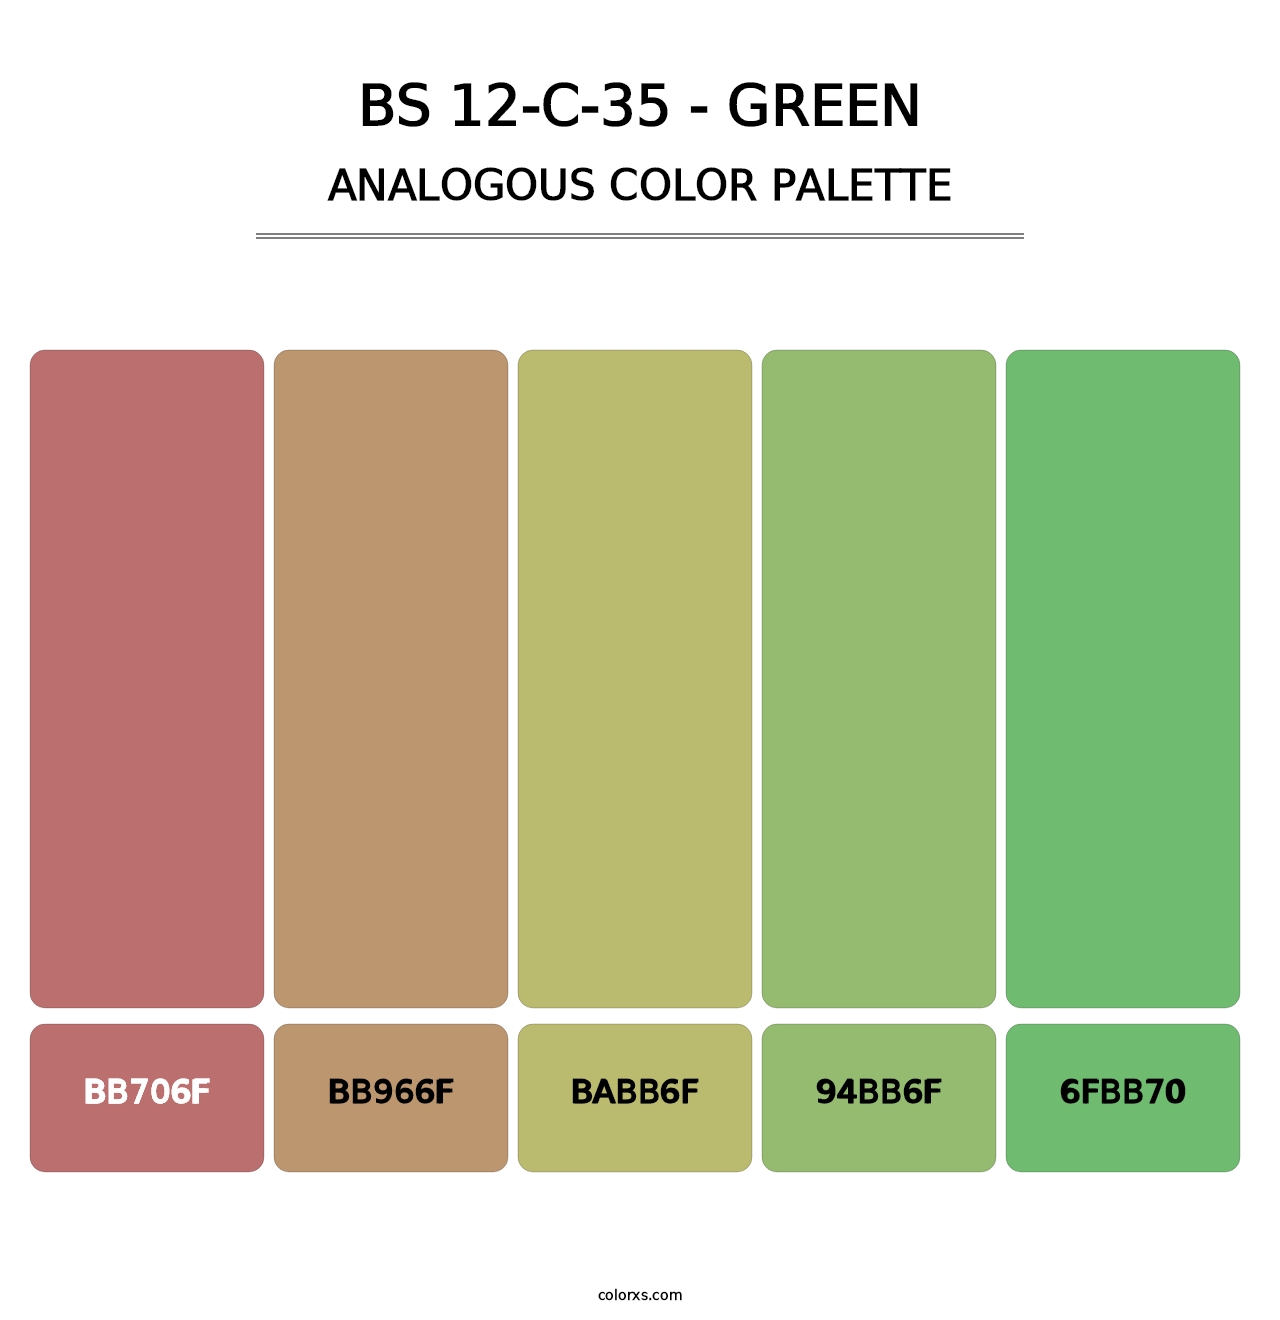 BS 12-C-35 - Green - Analogous Color Palette